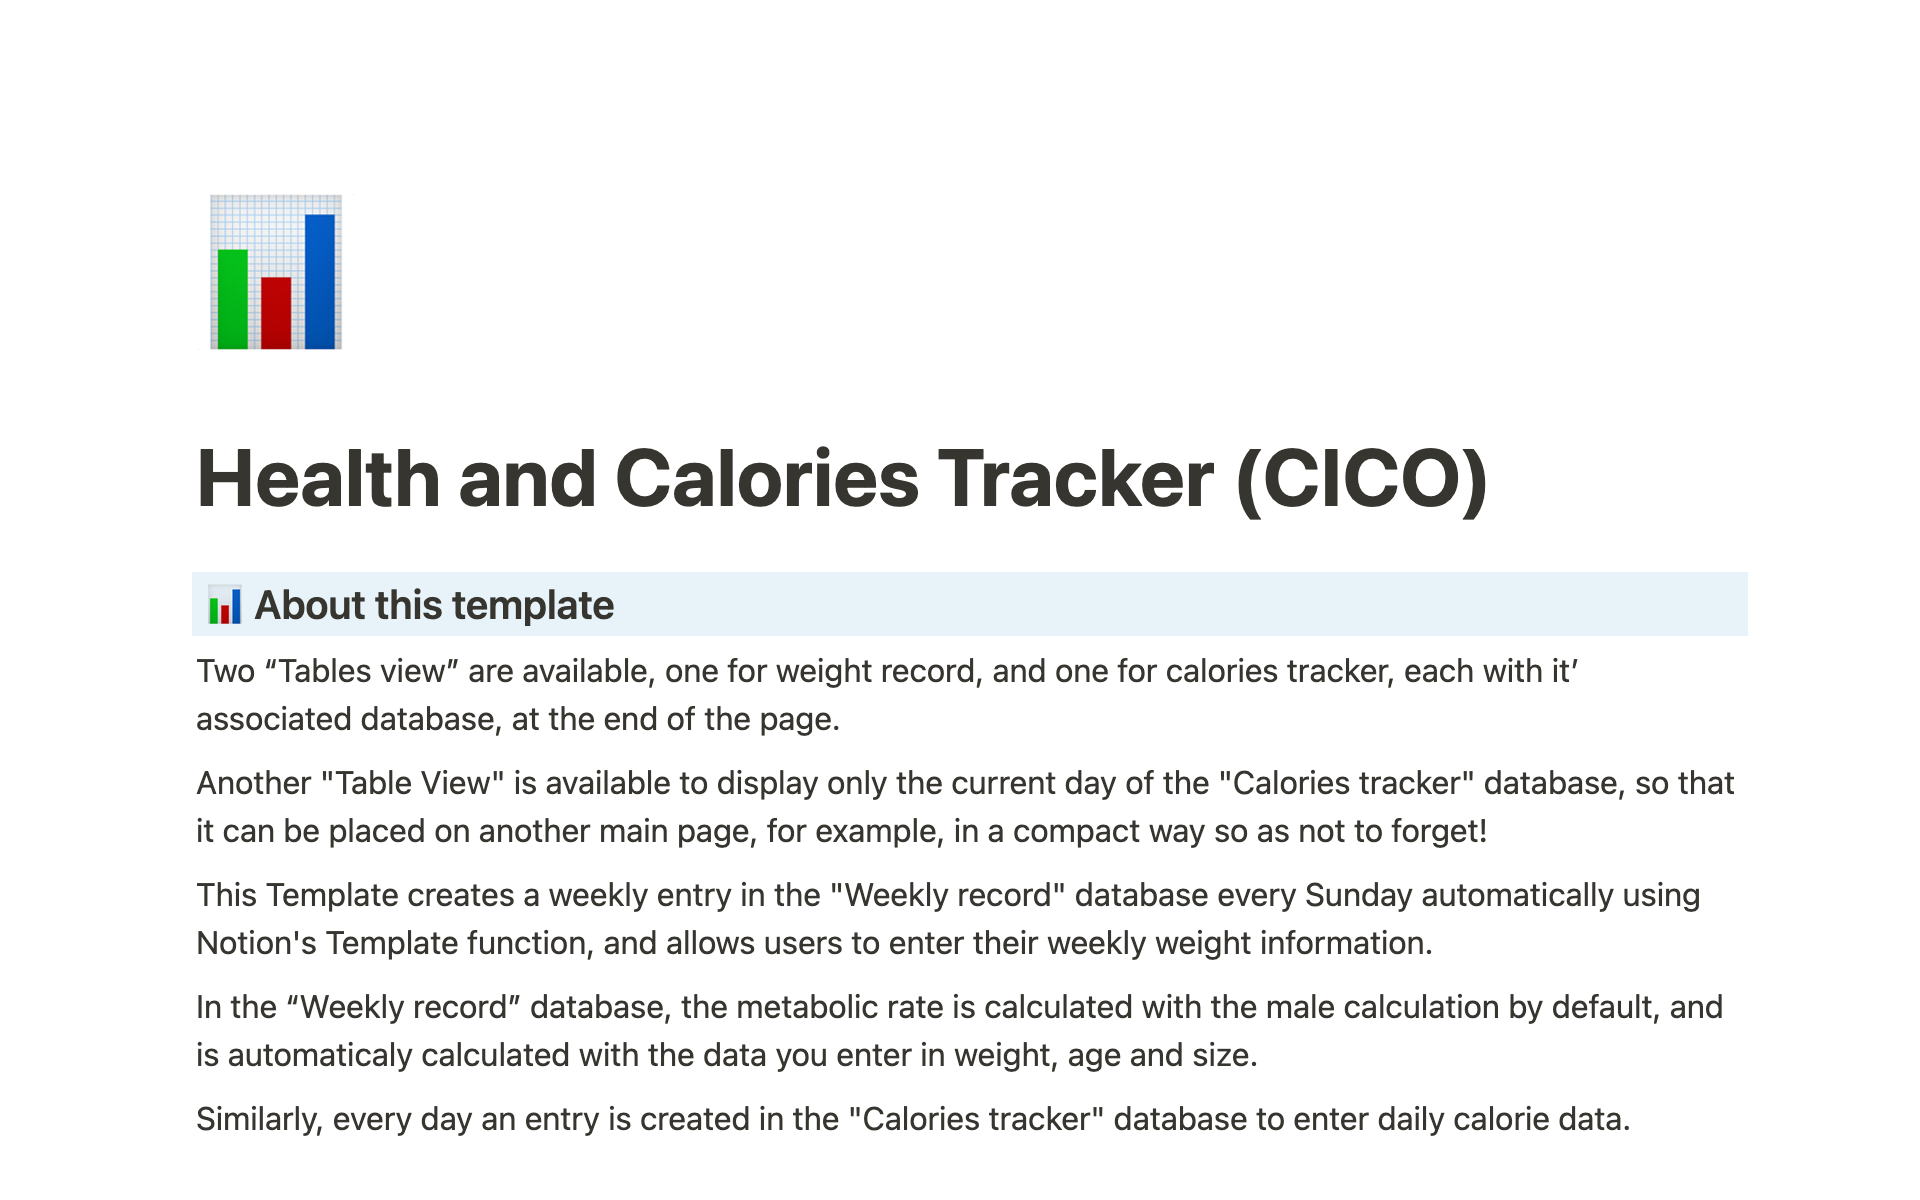 Aperçu du modèle de Health and Calories Tracker (CICO)